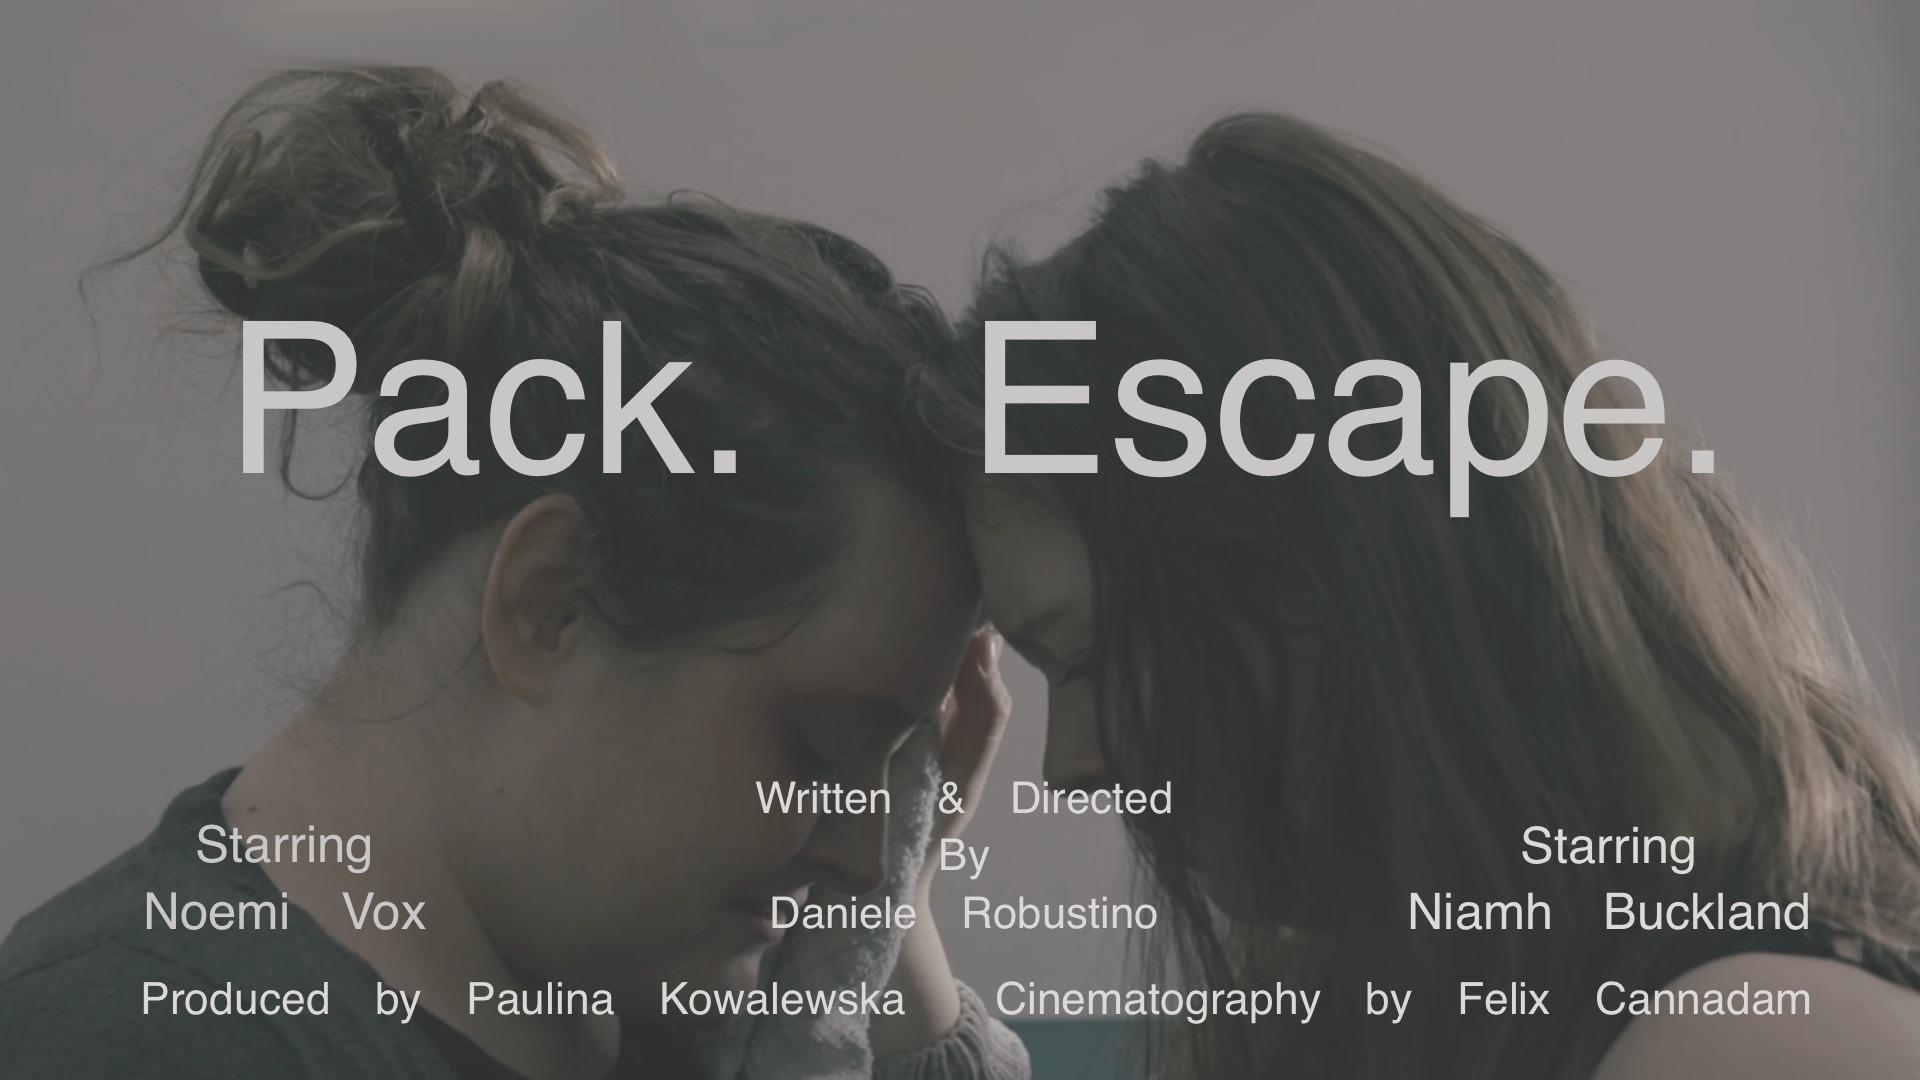 Pack. Escape.